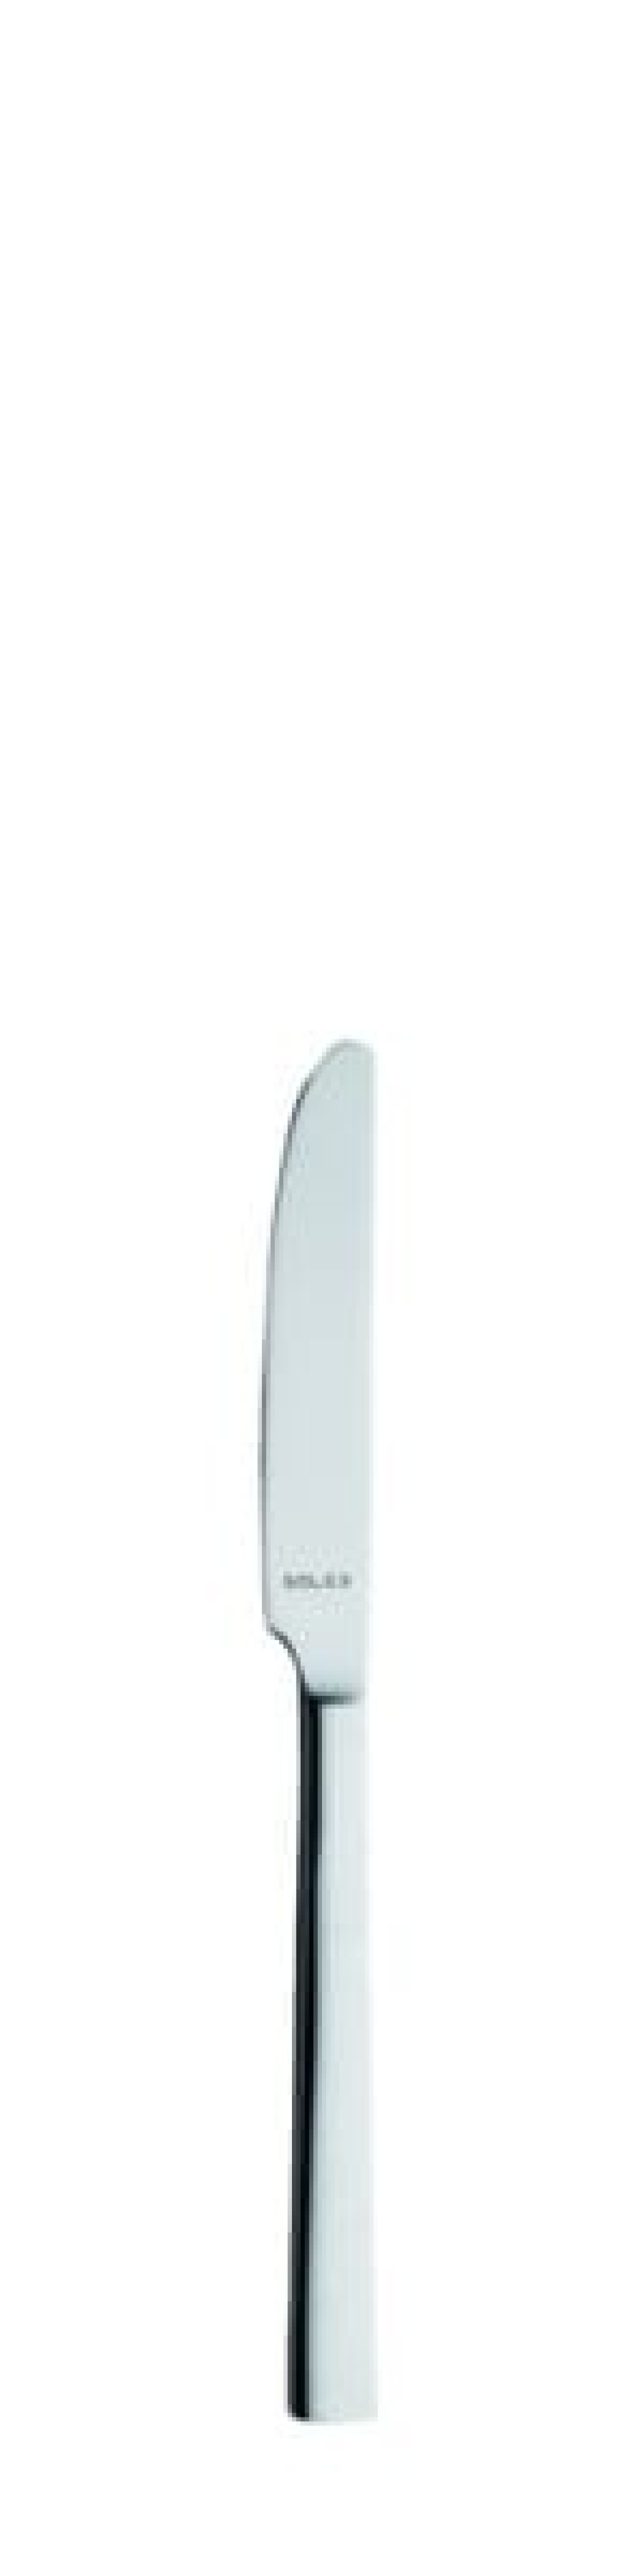 Nóż do masła Helena 175 mm - Solex w grupie Nakrycie stołu / Sztućce / Noże do masła w The Kitchen Lab (1284-21568)